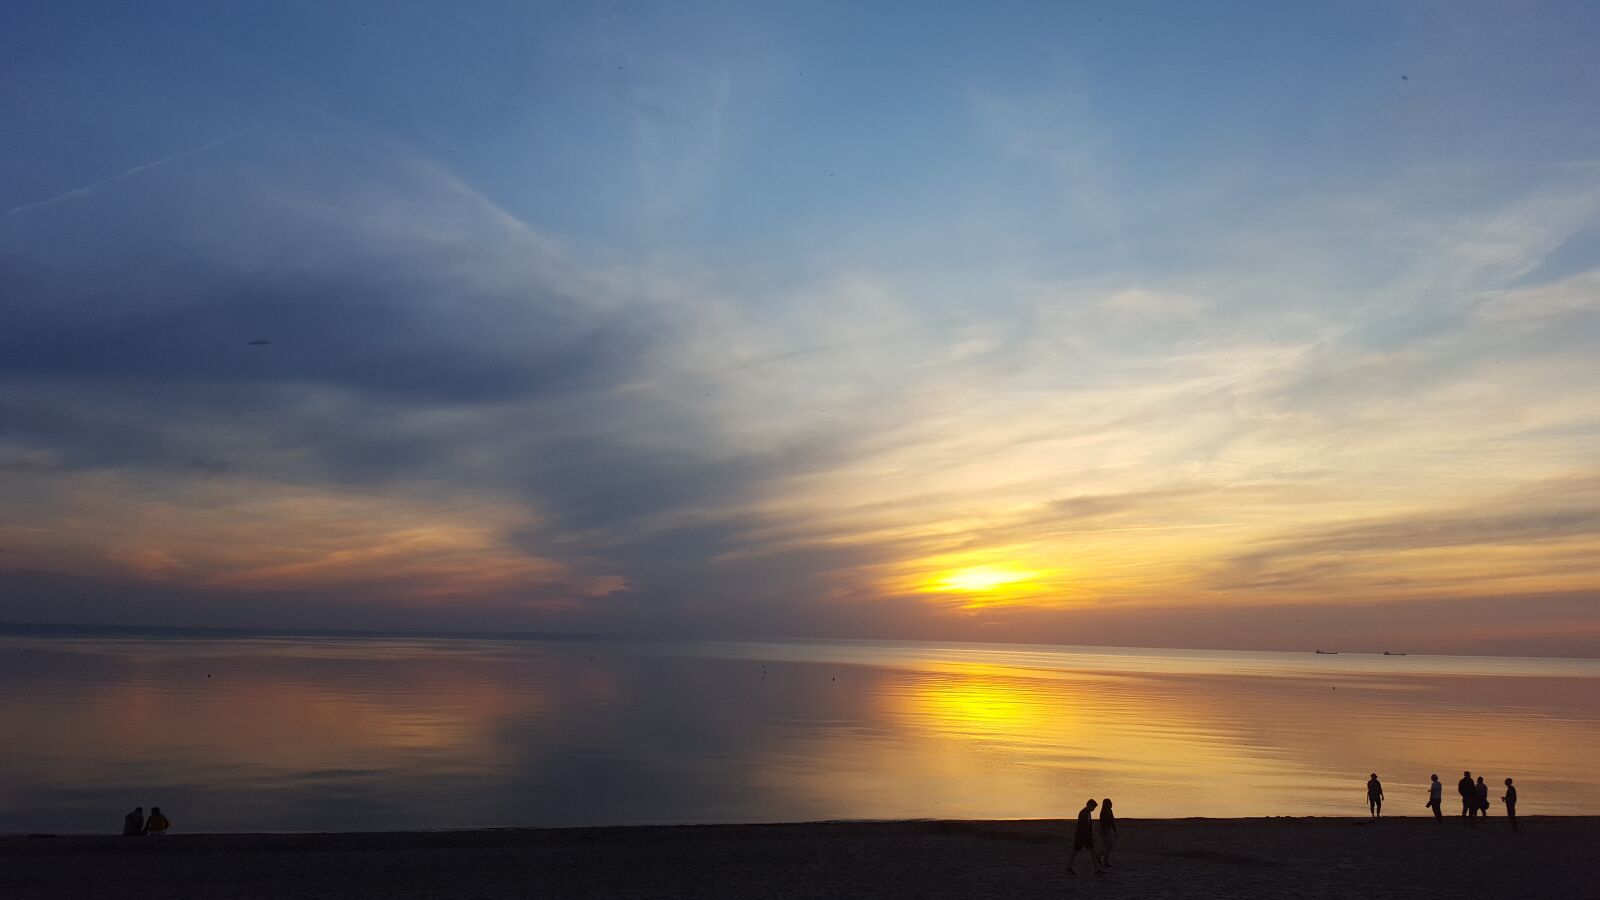 Samsung Galaxy S6 sample photo. Sunset, dawn, sea photography